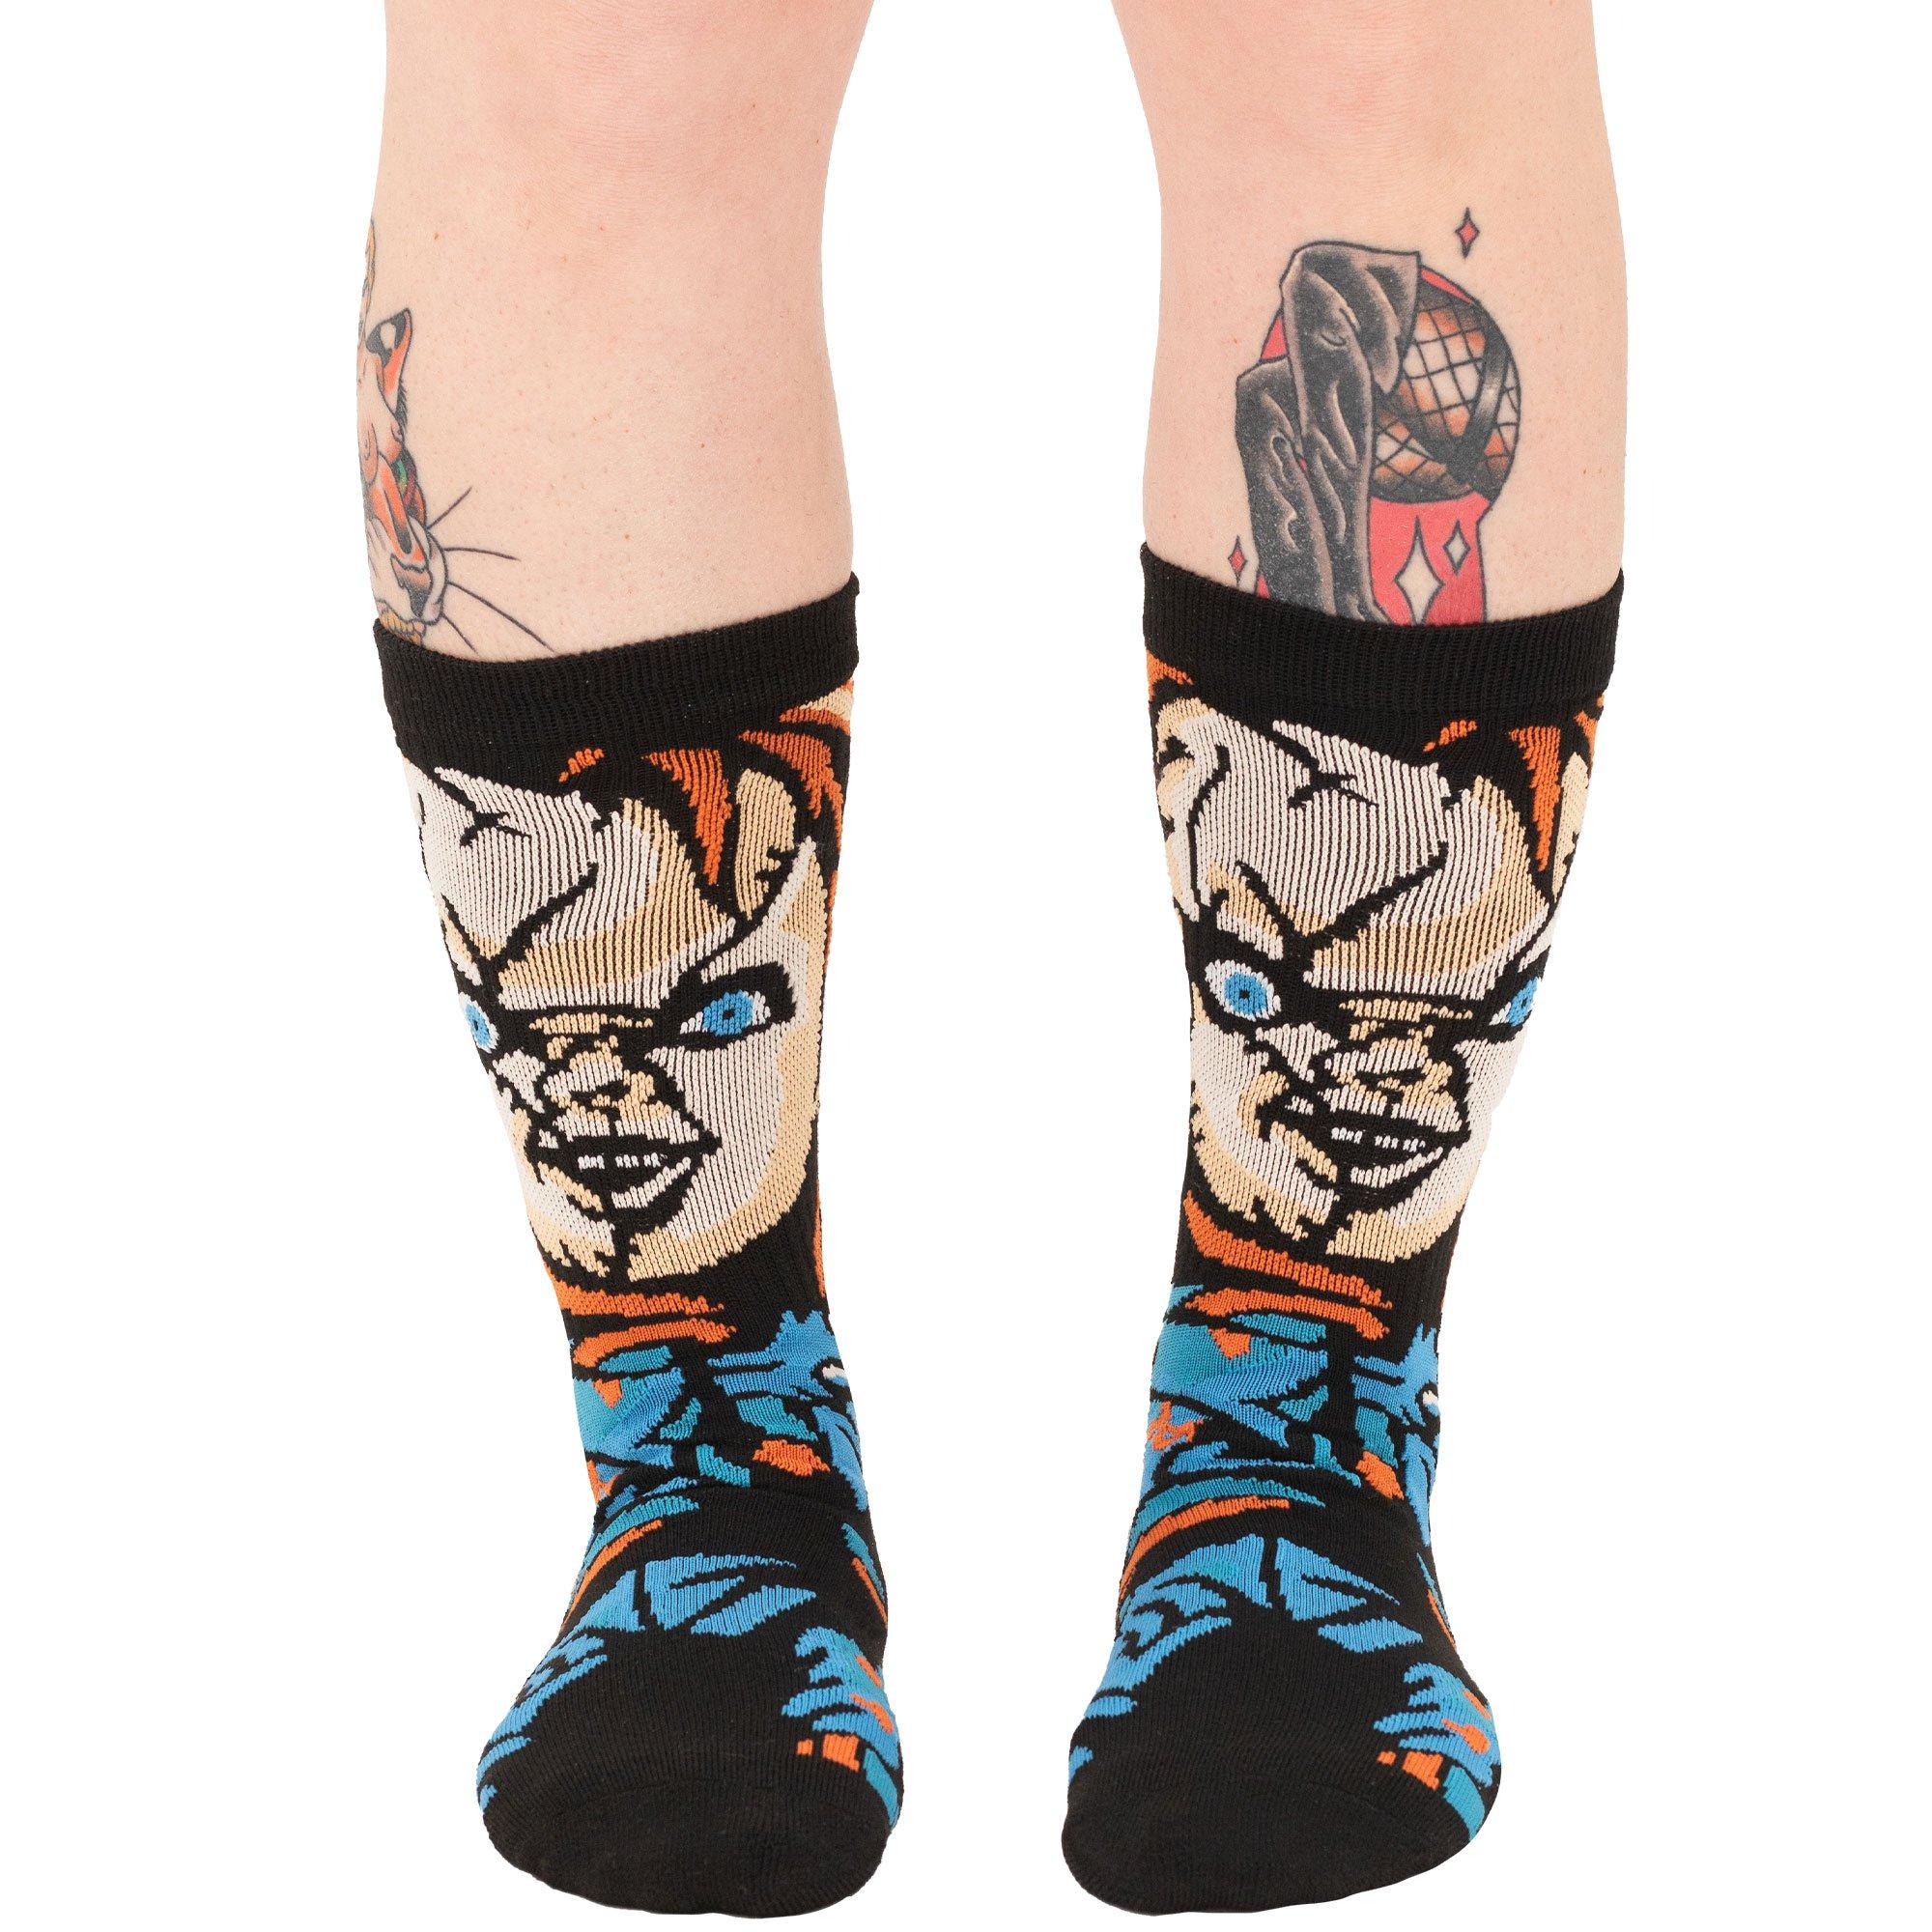 Chucky & Tiffany Premium Crew Socks, 2 Pairs - Bride of Chucky